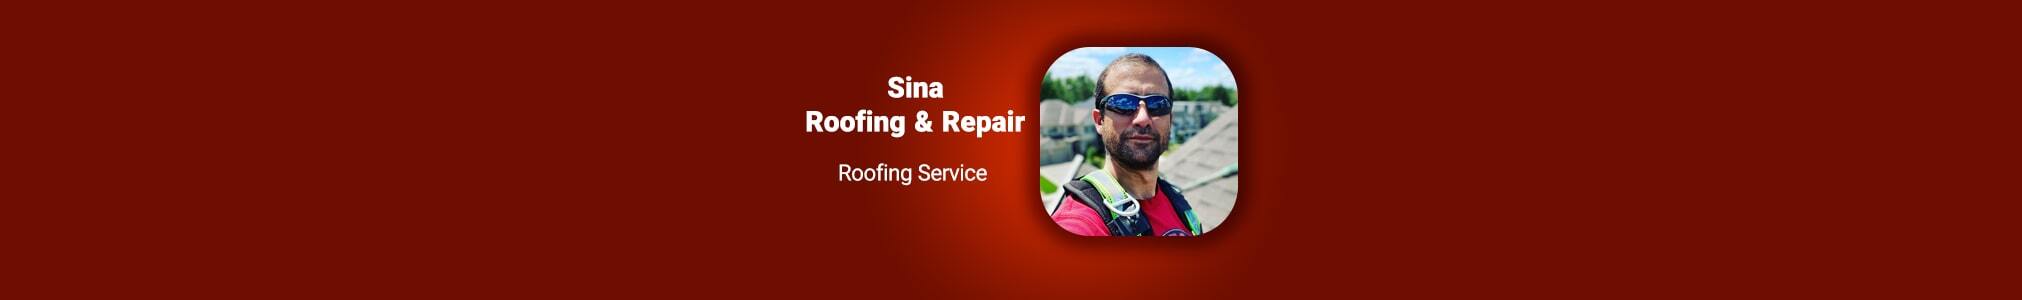 Sina Roofing & Repair